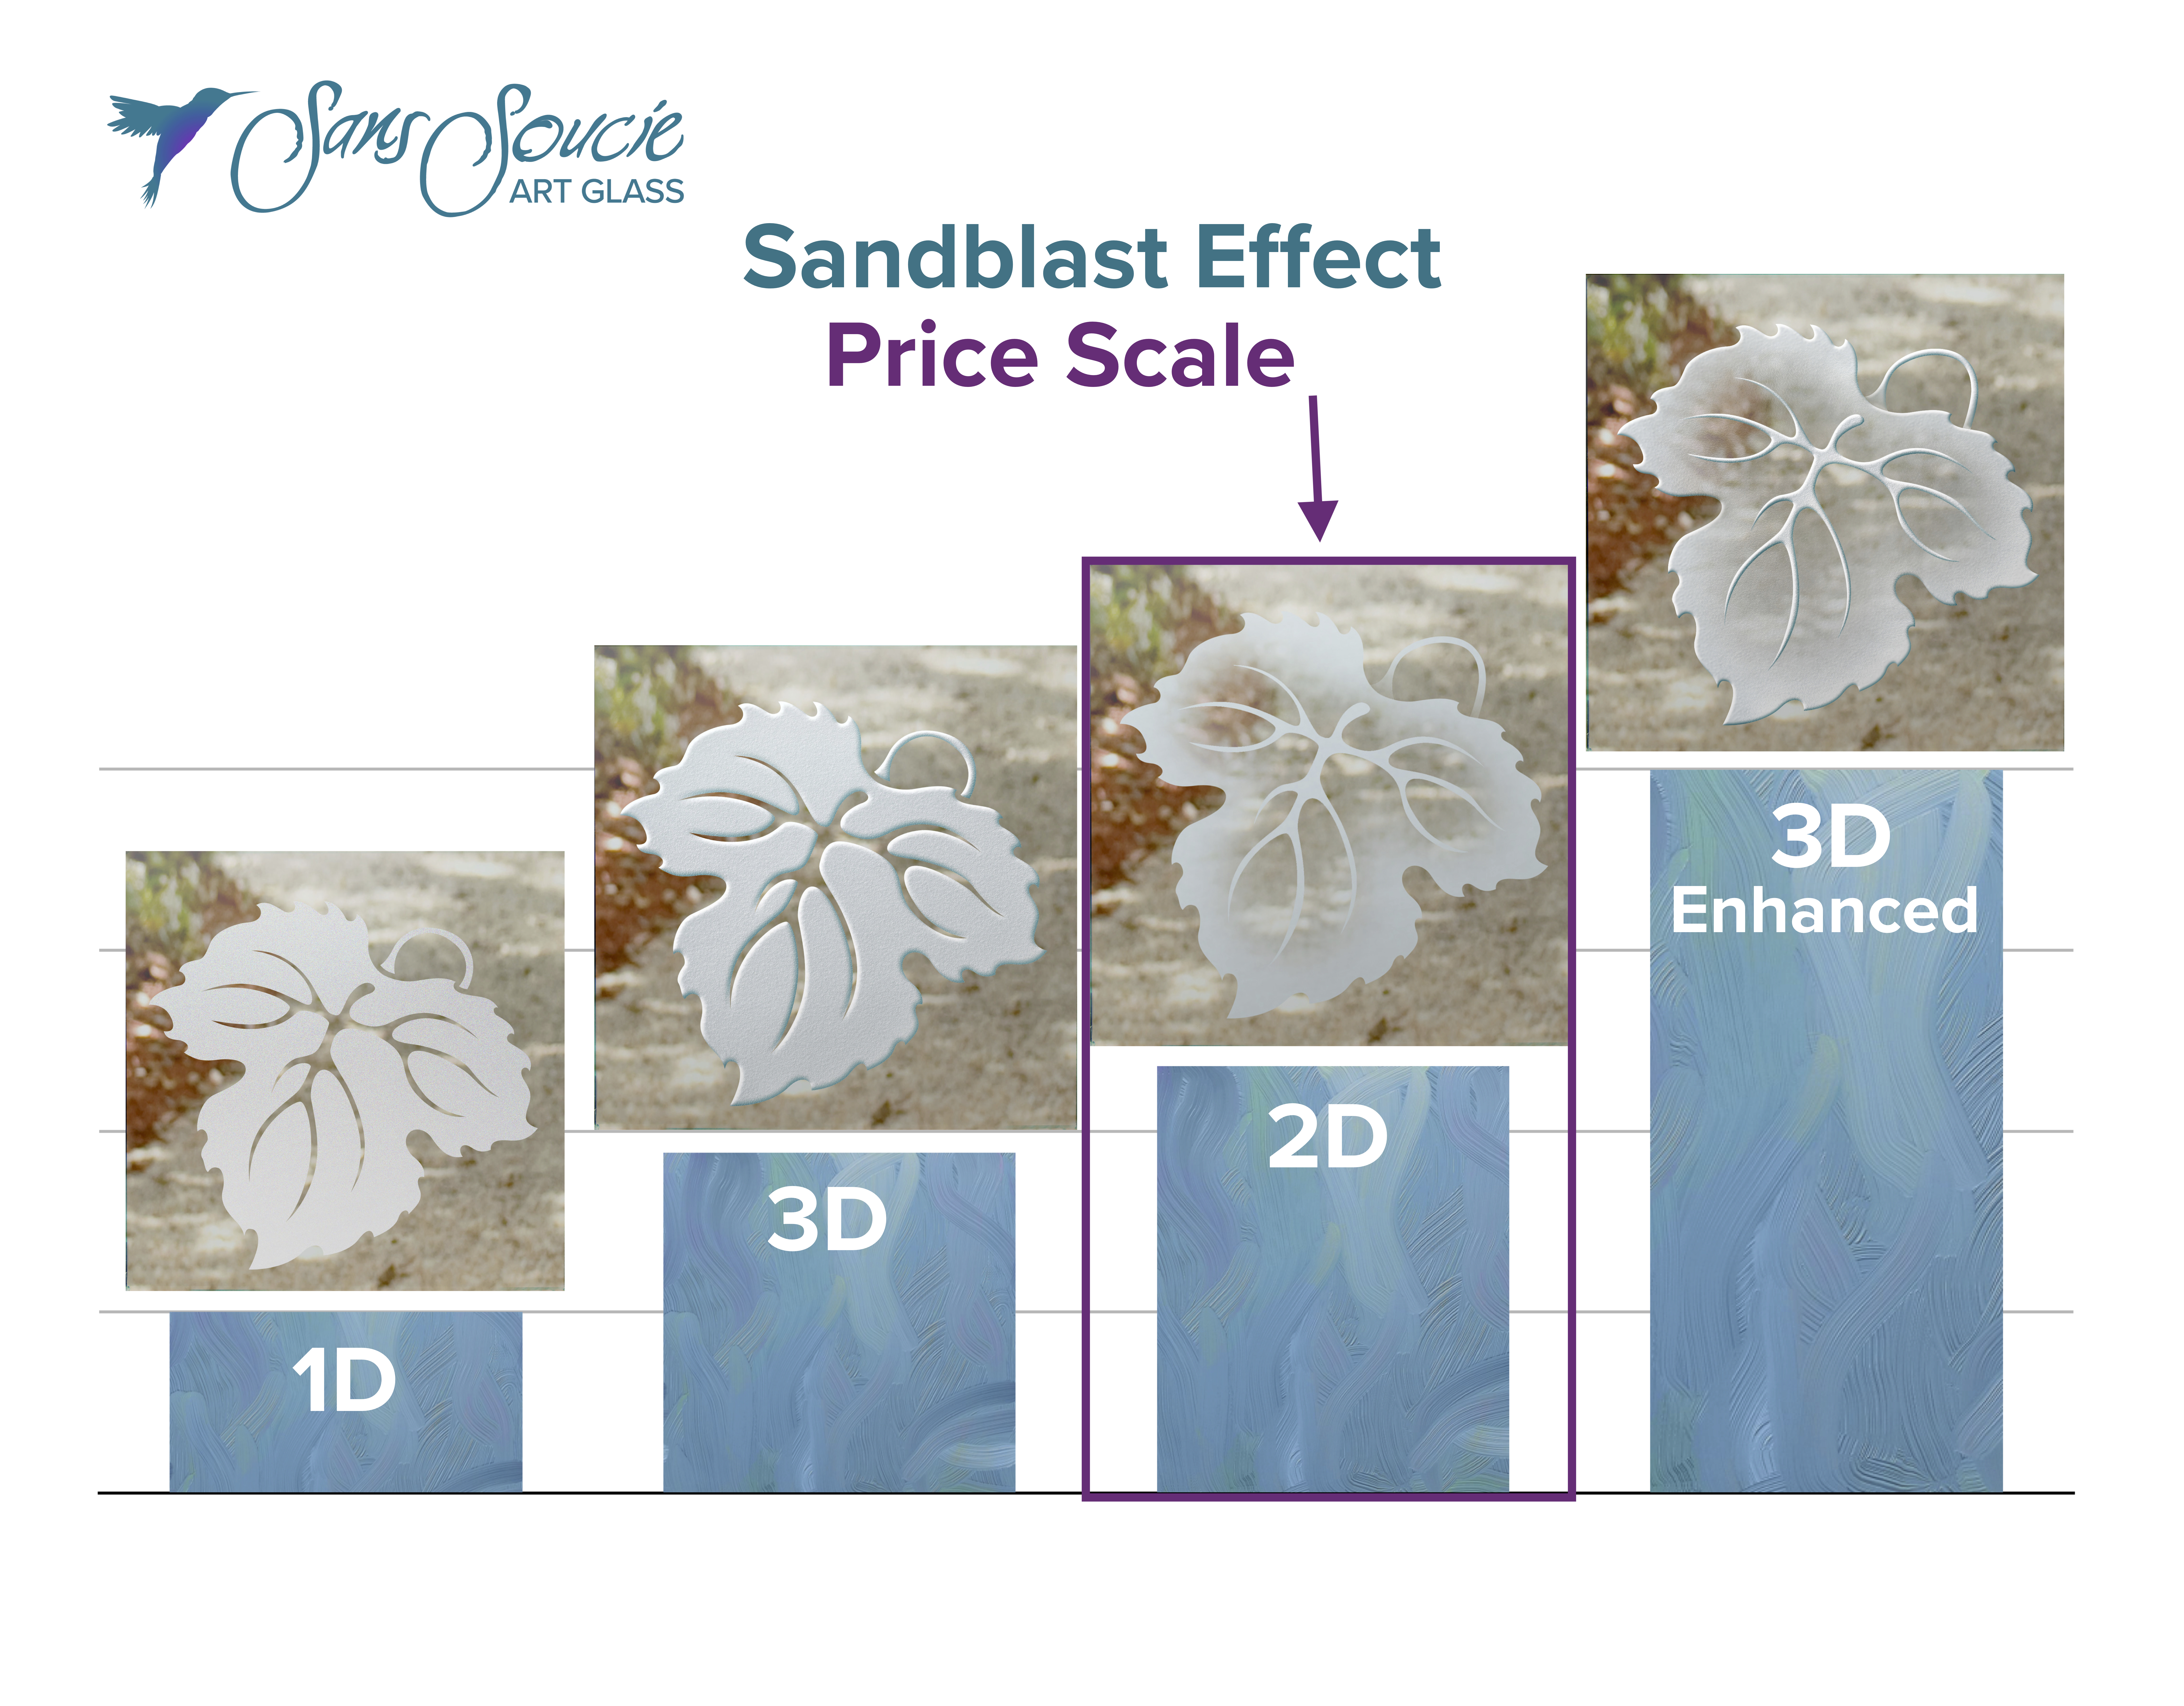 sandblast effect price scale 1D, 3D, 2D, 3D enhanced glass effects sans soucie 